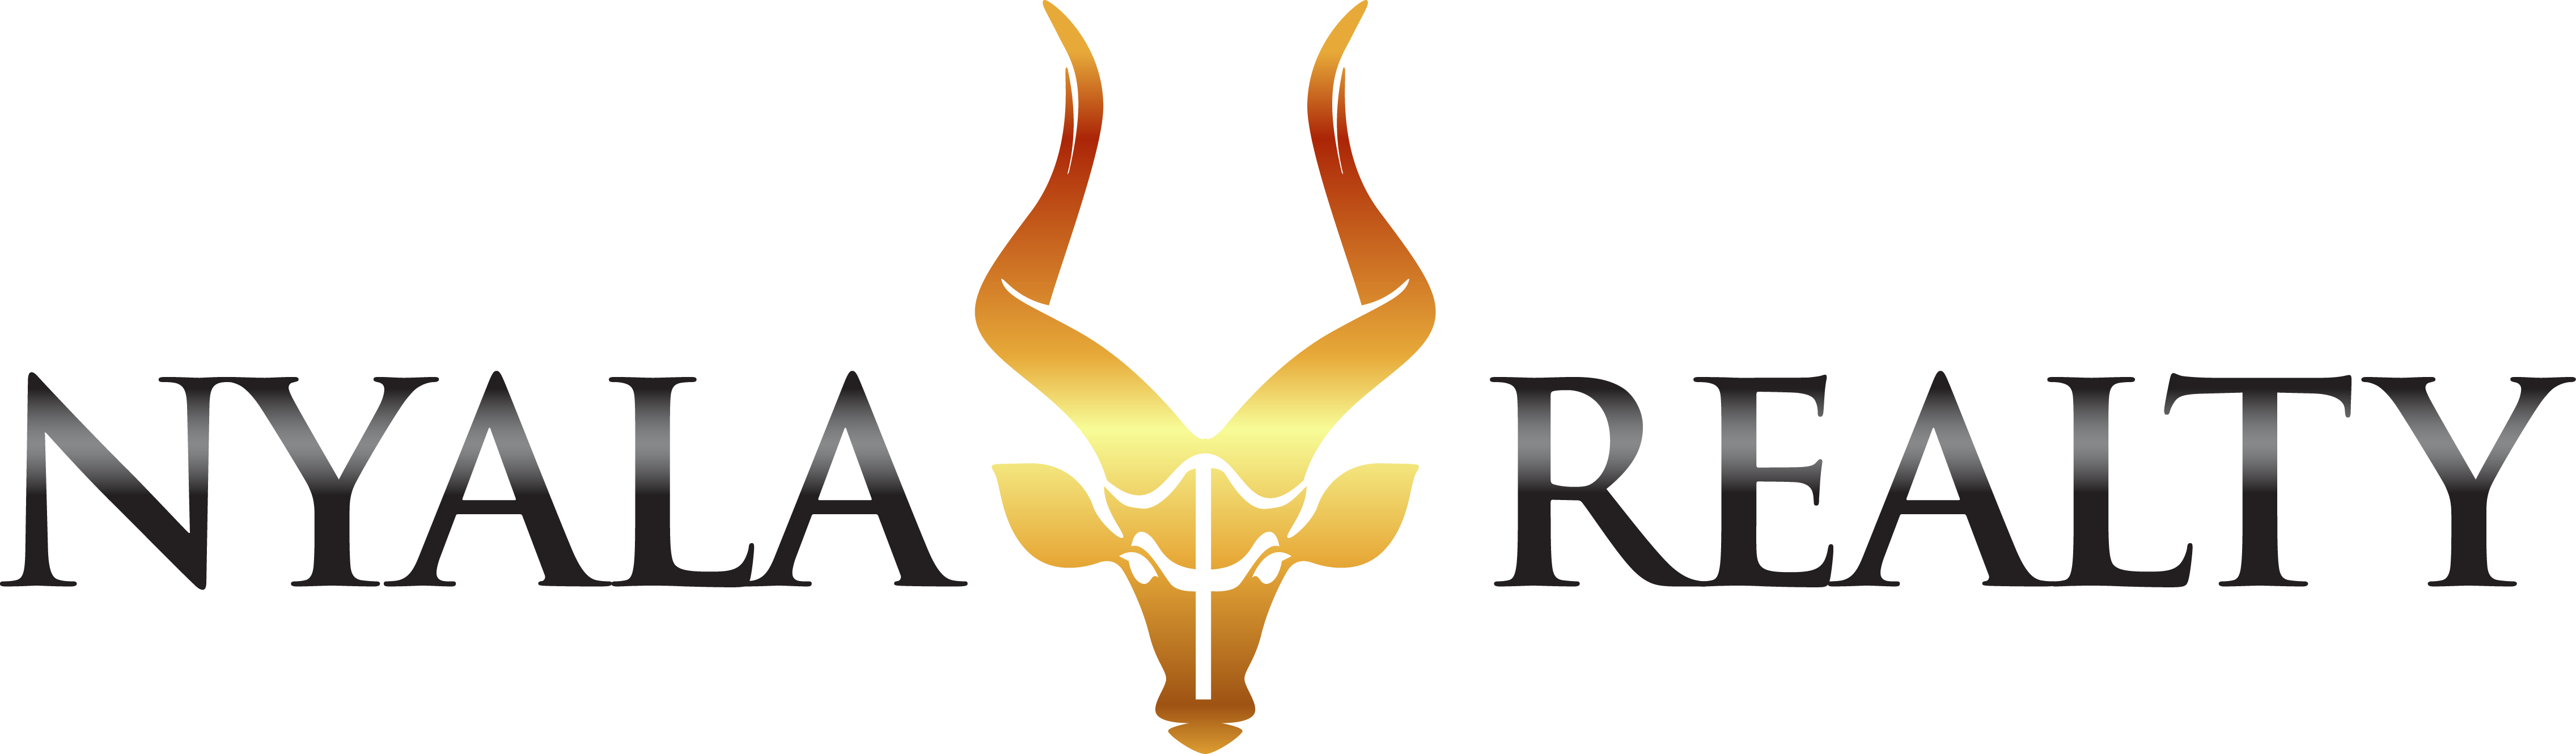 RSG-Realty Star Group, LLC 